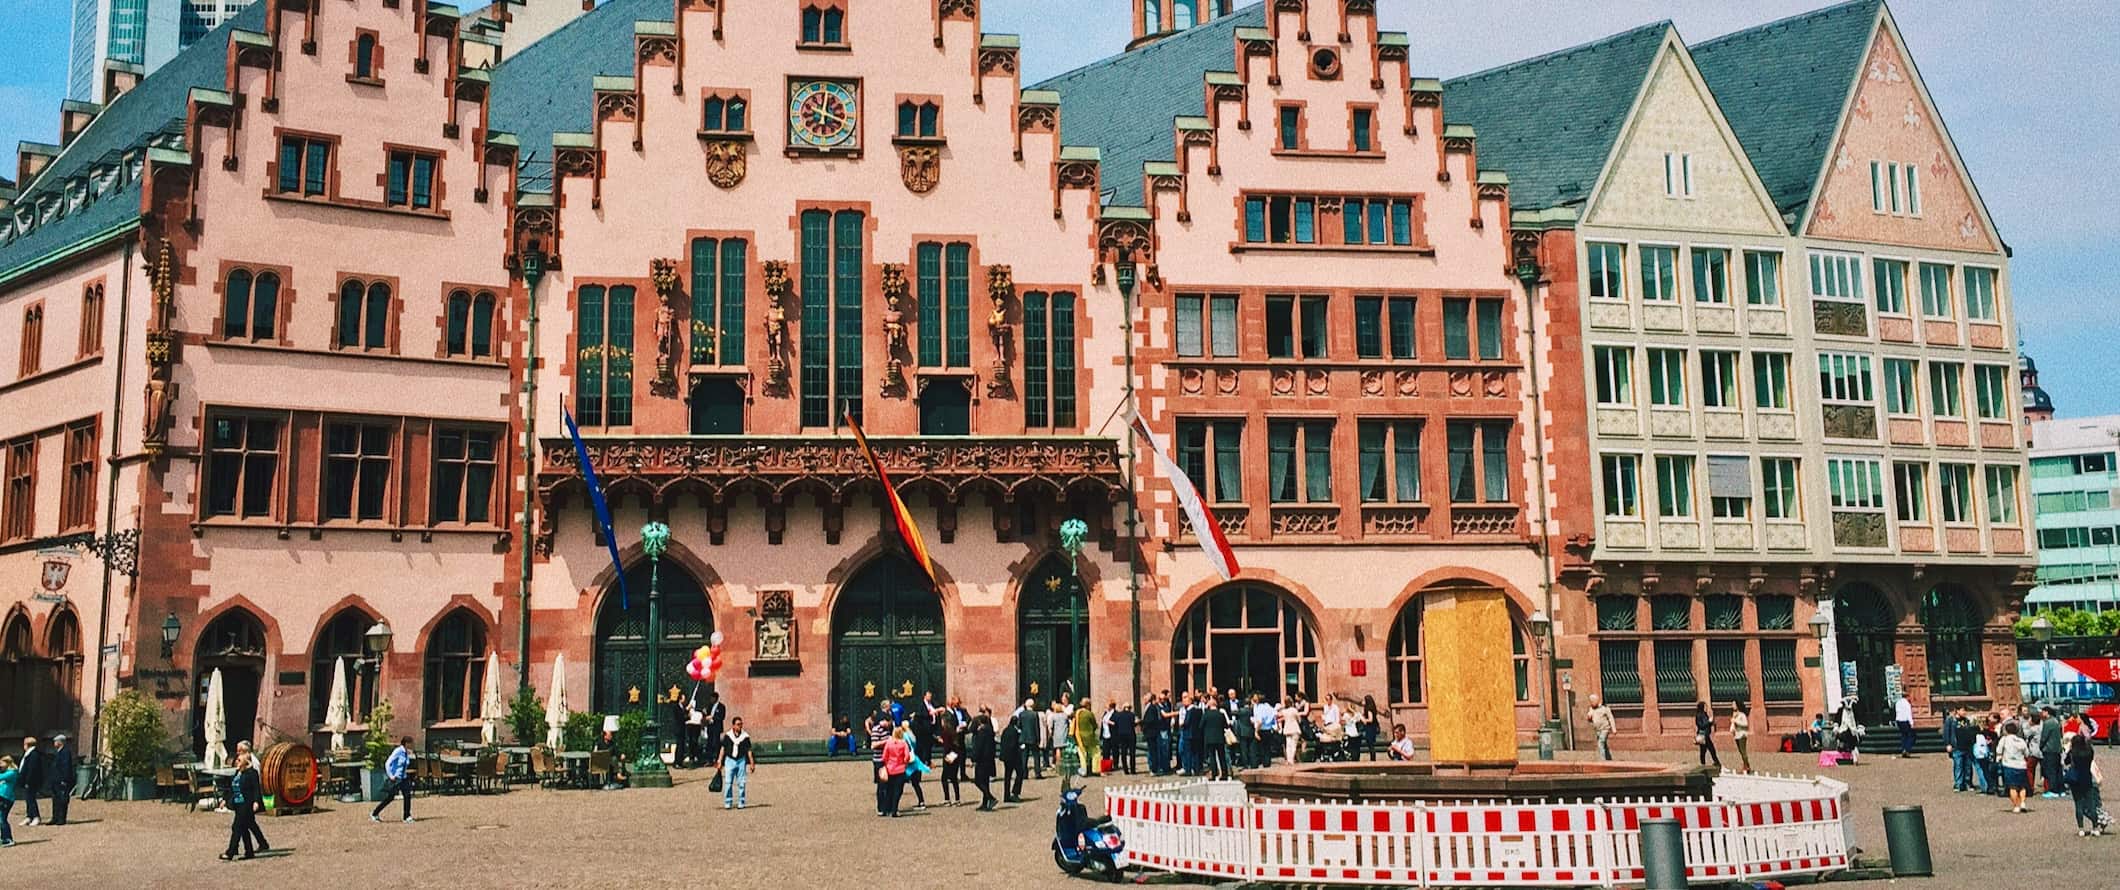 Kleurrijke oude gebouwen langs een plein in Frankfurt, Duitsland